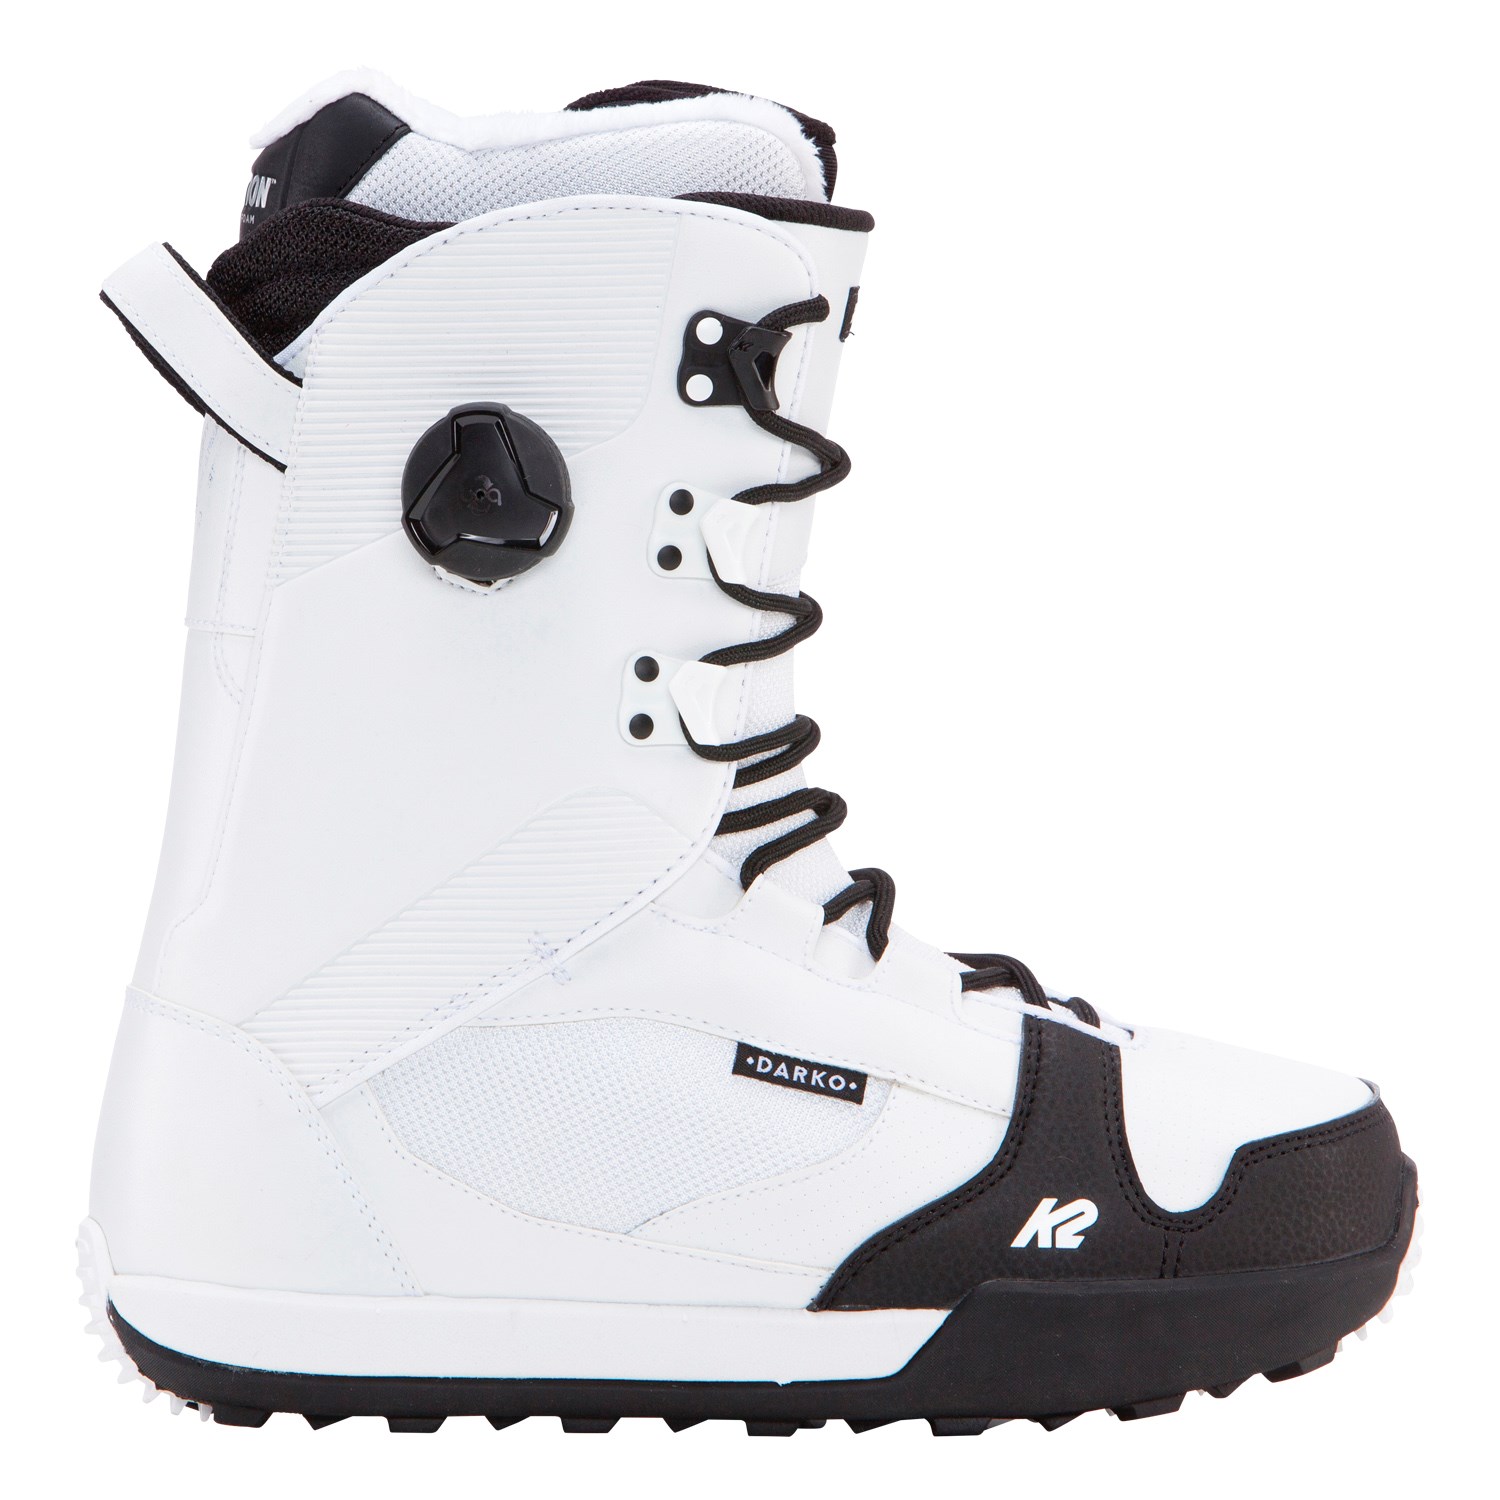 Stiefel Snowboard Boot K2 Darko Conda Grey 2018 